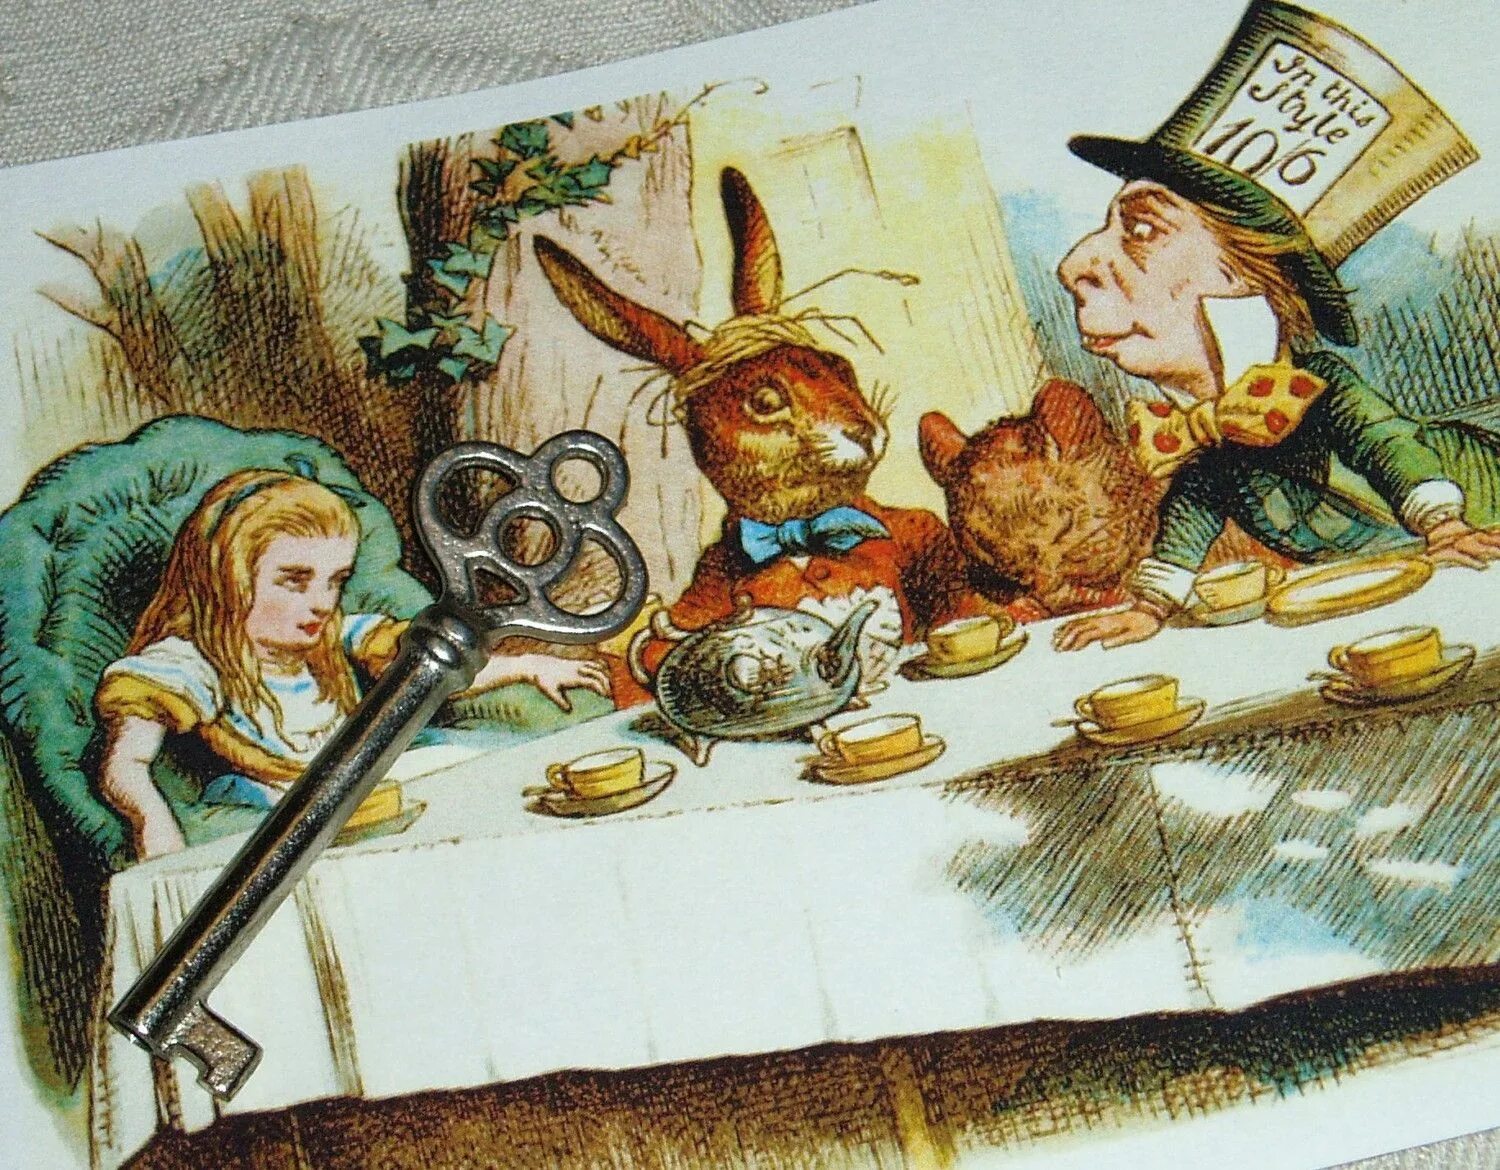 Bergamot пряжка Mad Tea Party. The Mad Tea Party Алиса. Mad Tea Party Alice in Wonderland. Чаепитие у Шляпника.